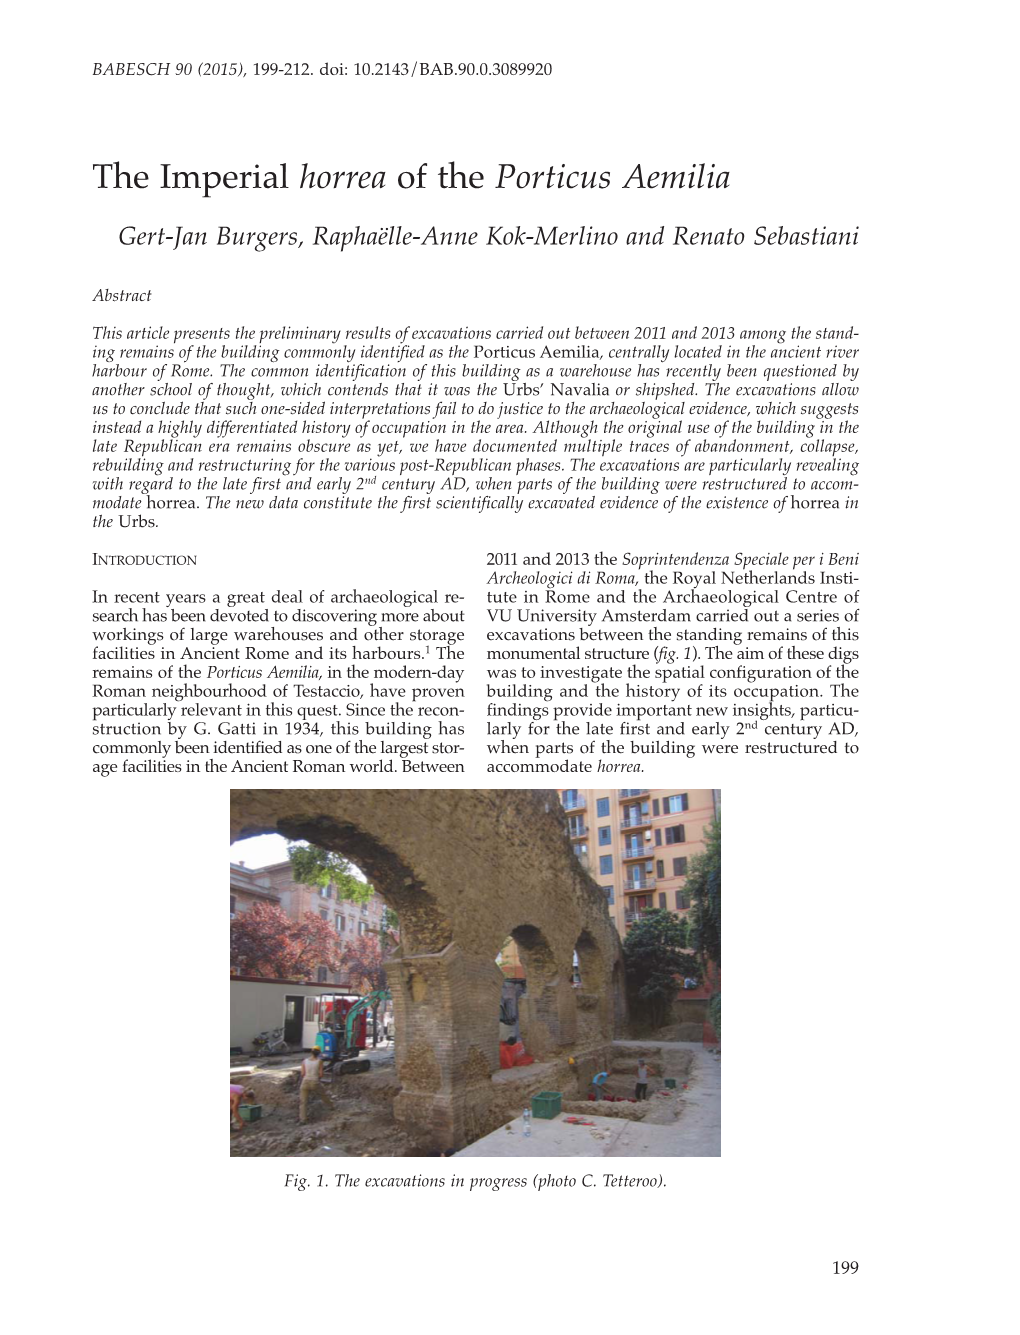 The Imperial Horrea of the Porticus Aemilia